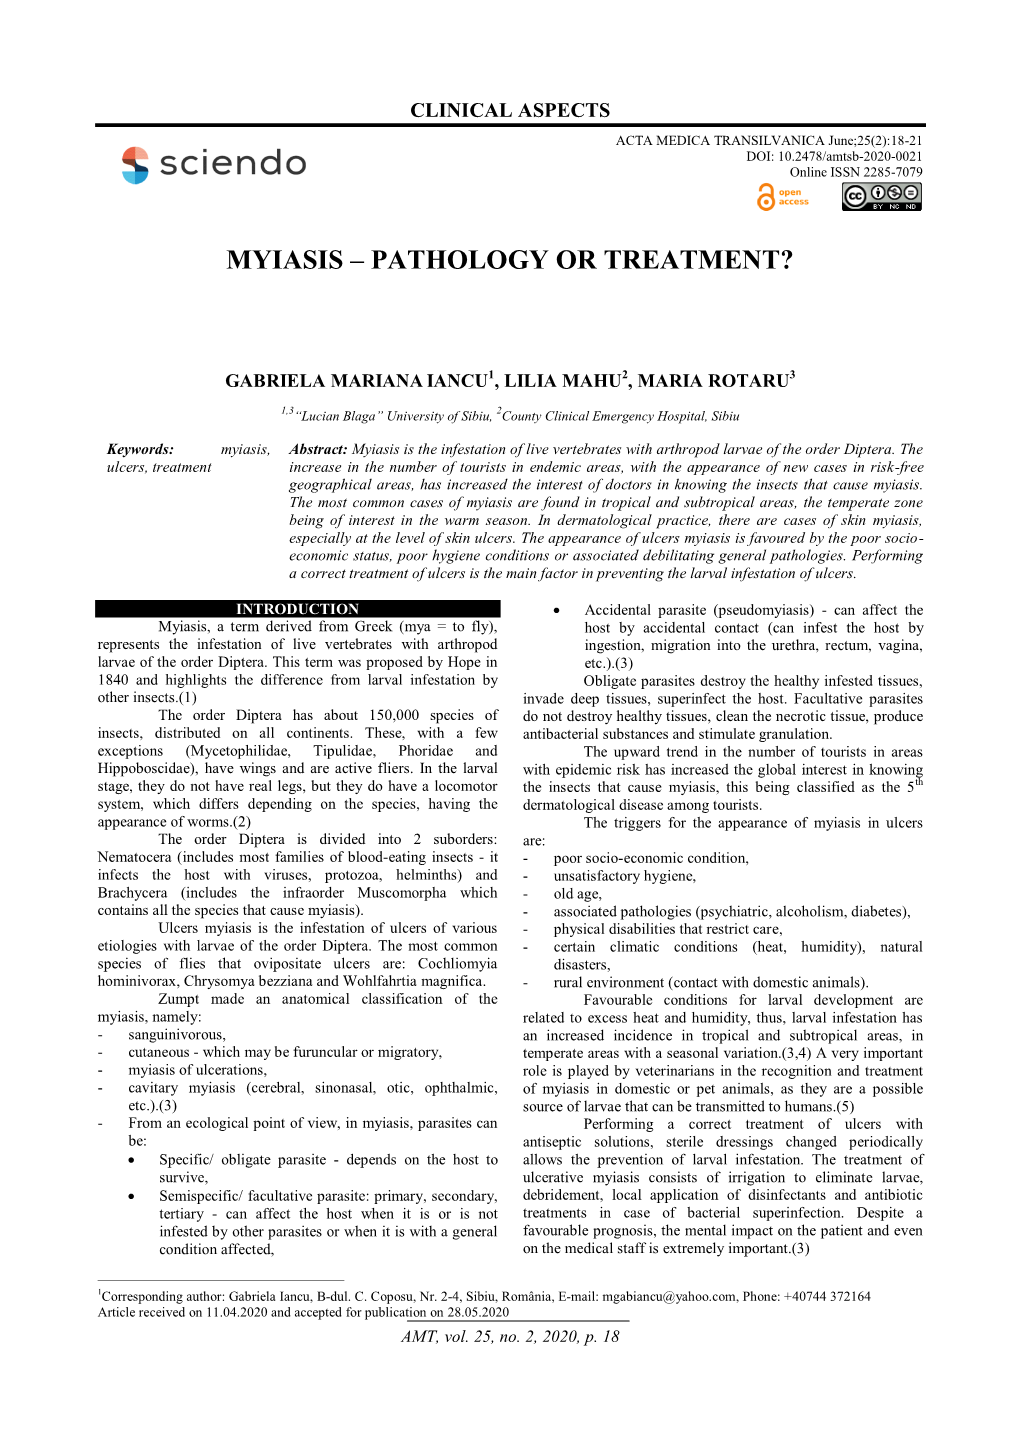 Myiasis – Pathology Or Treatment?